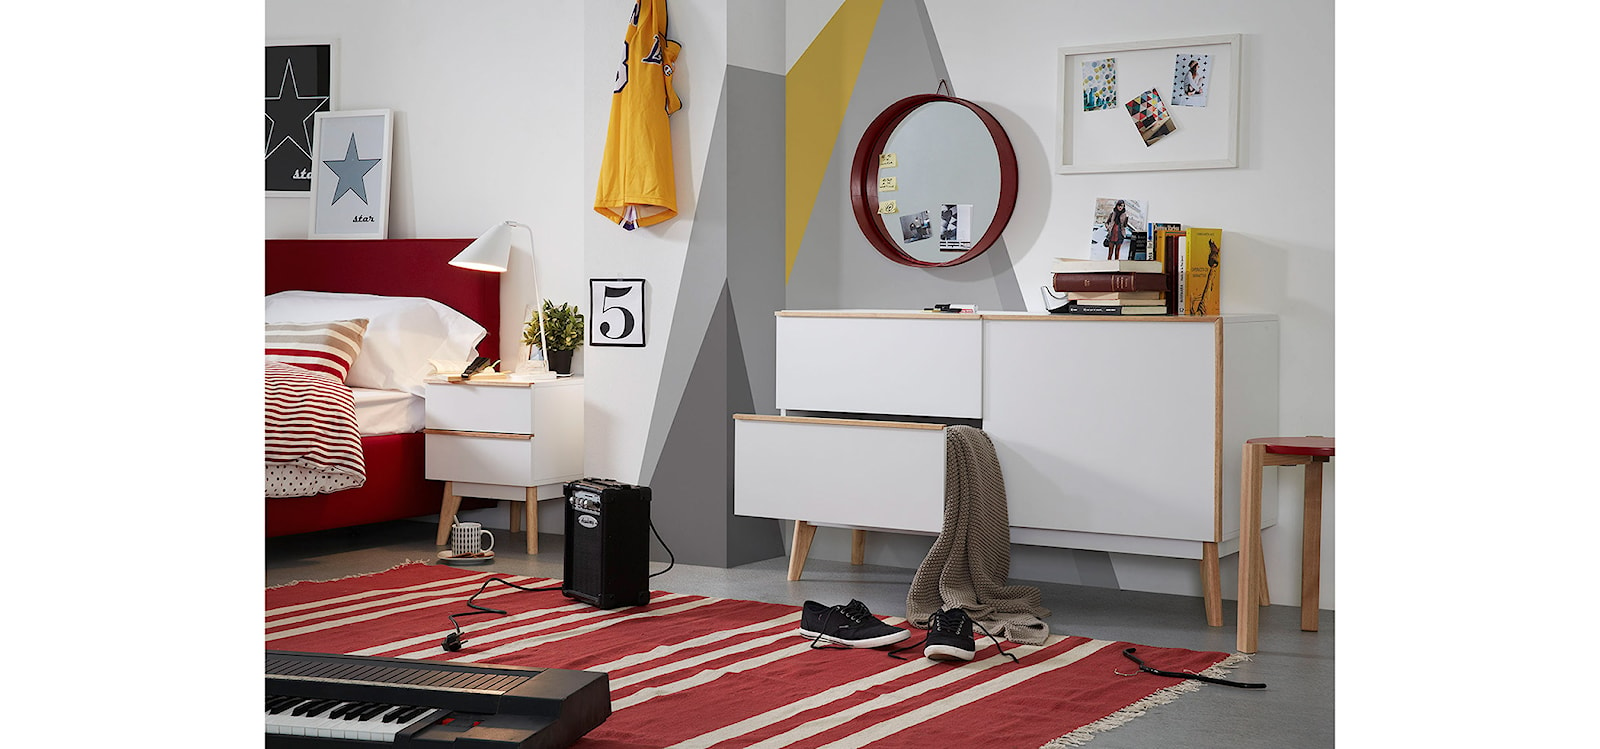 Wygodne rozwiązania w sypialni - zdjęcie od Le Pukka concept store - Homebook